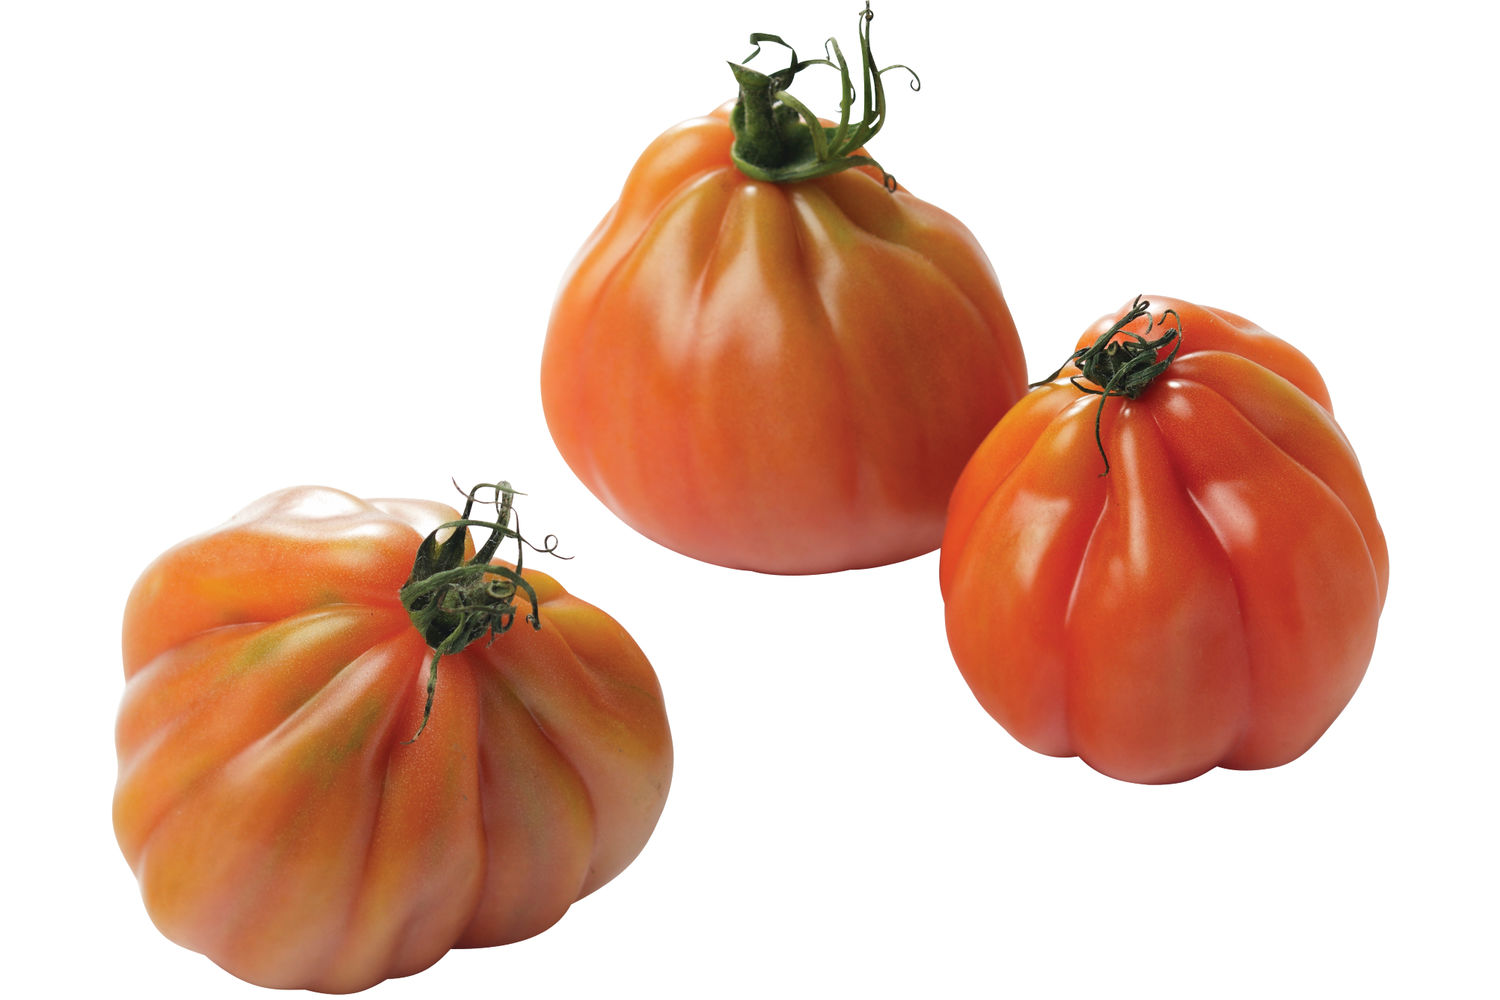 Coeur de boeuf tomaat verpakt 500gr stuk 1